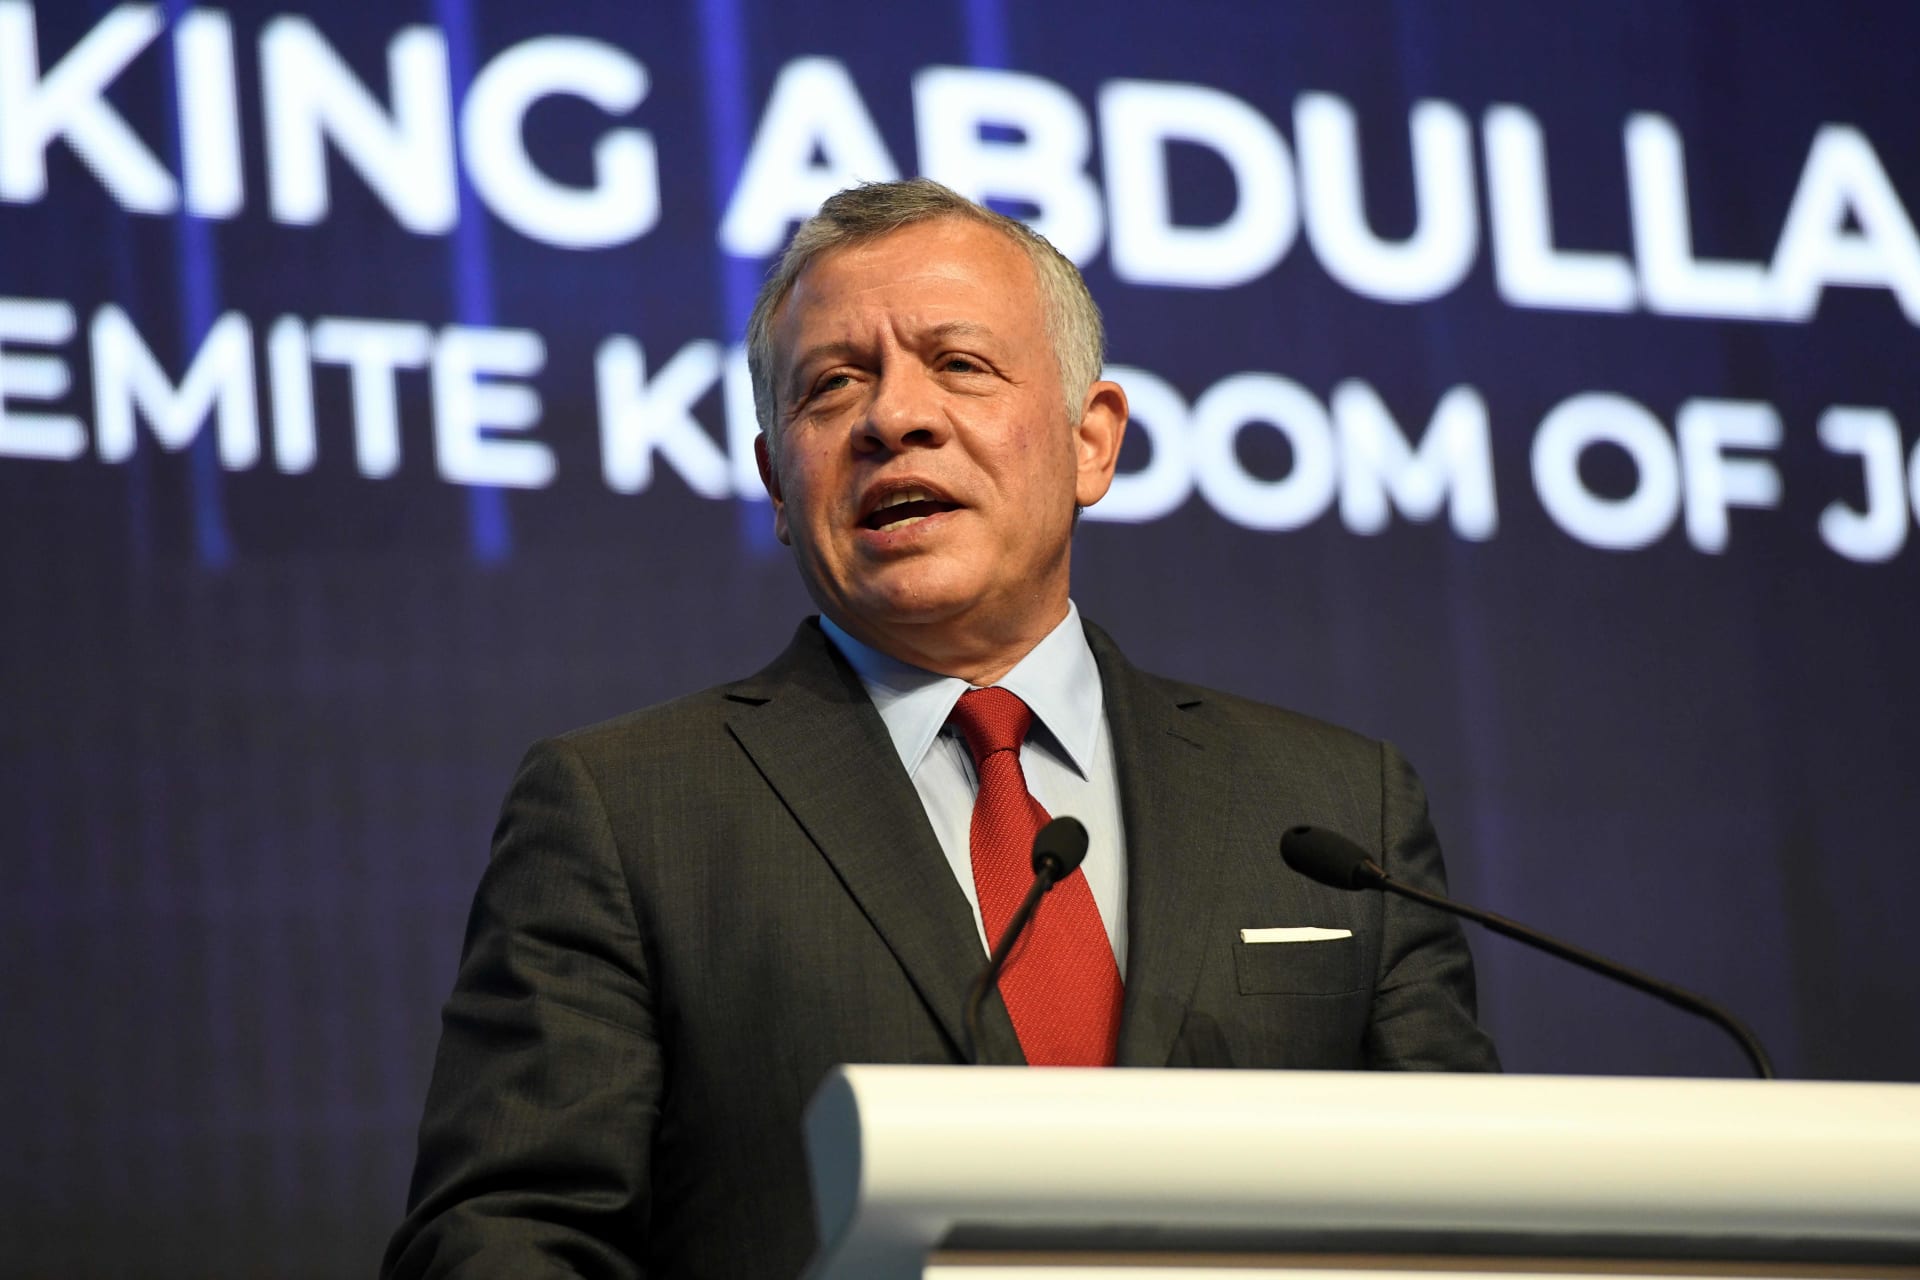 ملك الأردن يدين "هجوم أرامكو" في اتصال هاتفي مع العاهل السعودي